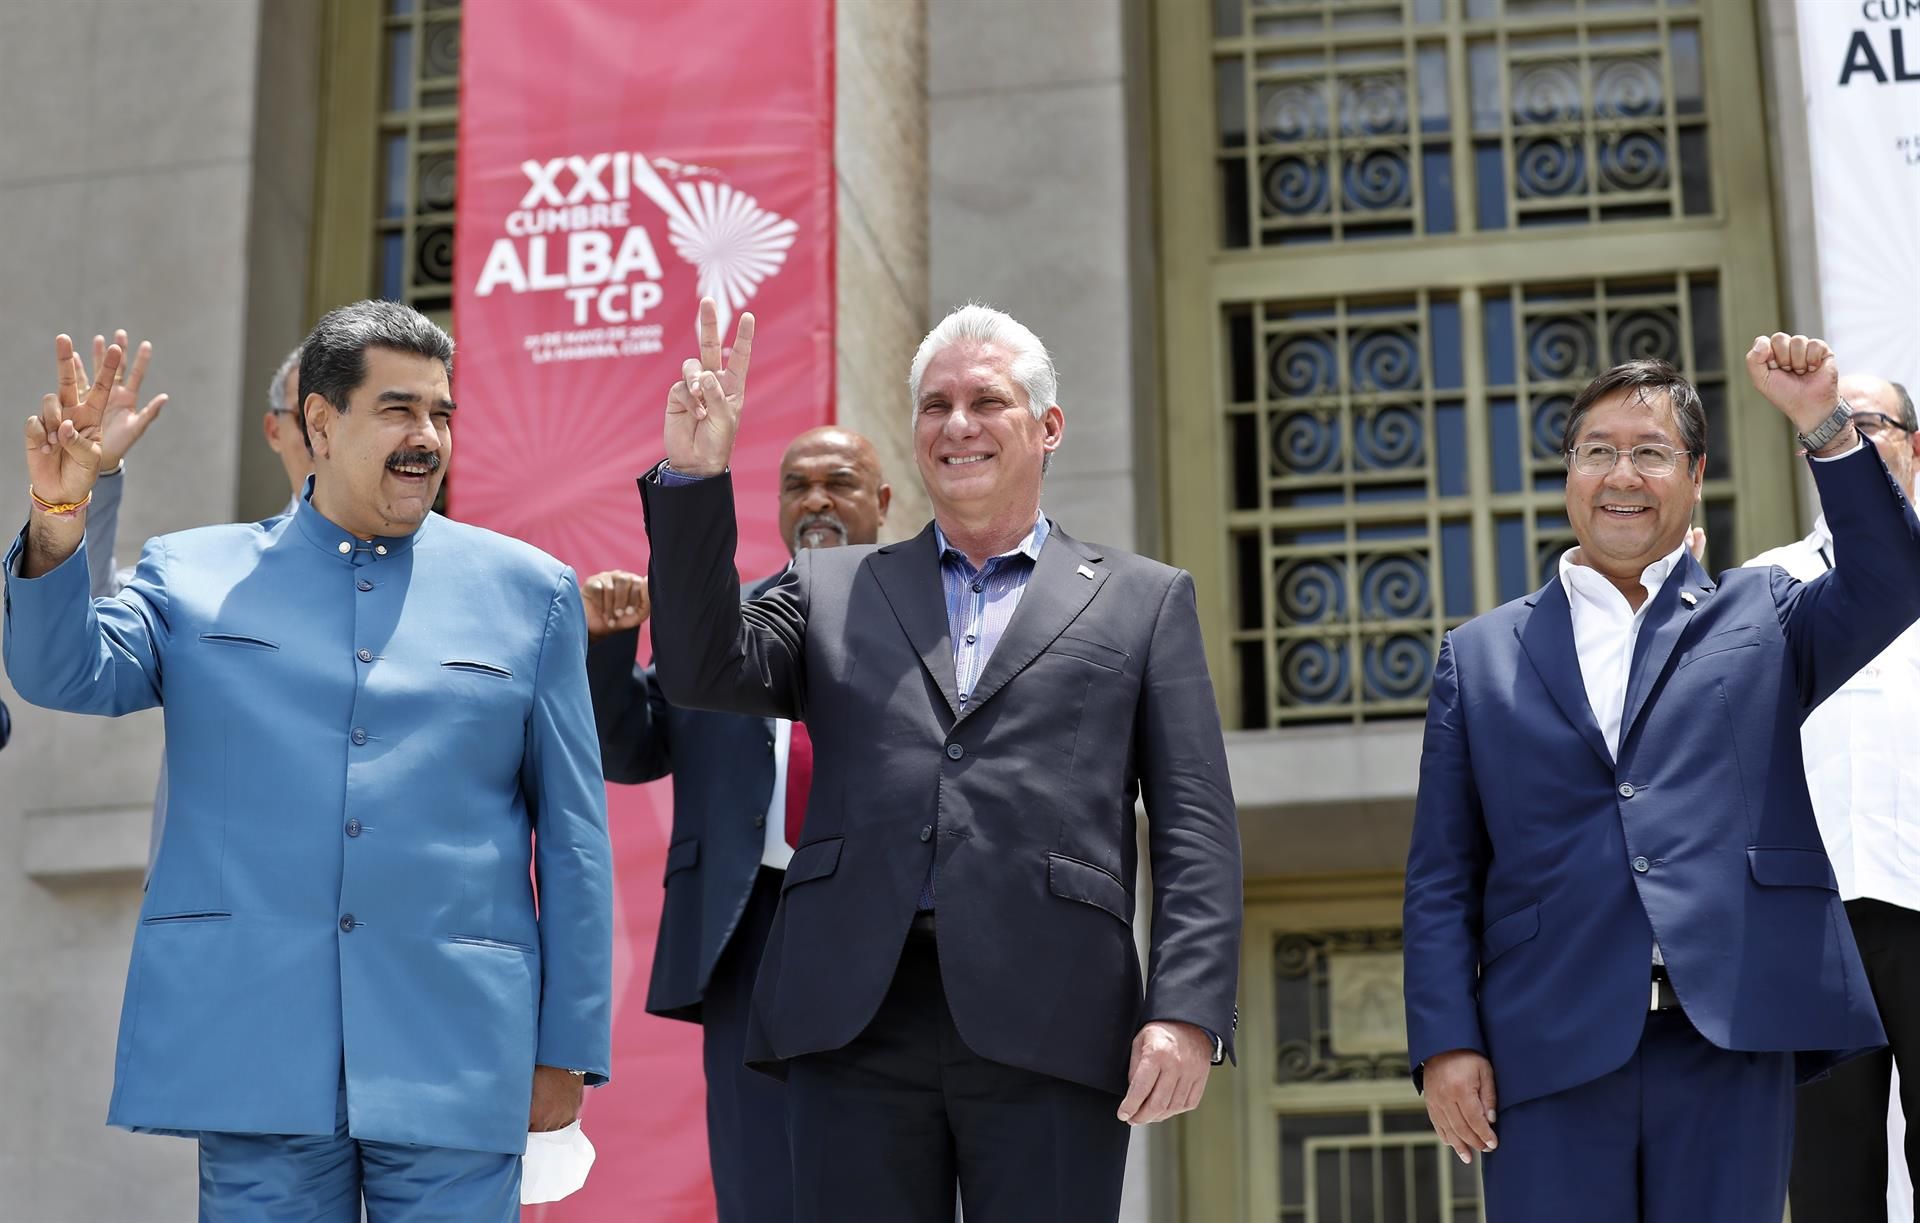 Los presidentes de Cuba, Miguel Diaz-Canel (c), de Venezuela, Nicolás Maduro (i), y de Bolivia, Luis Arce